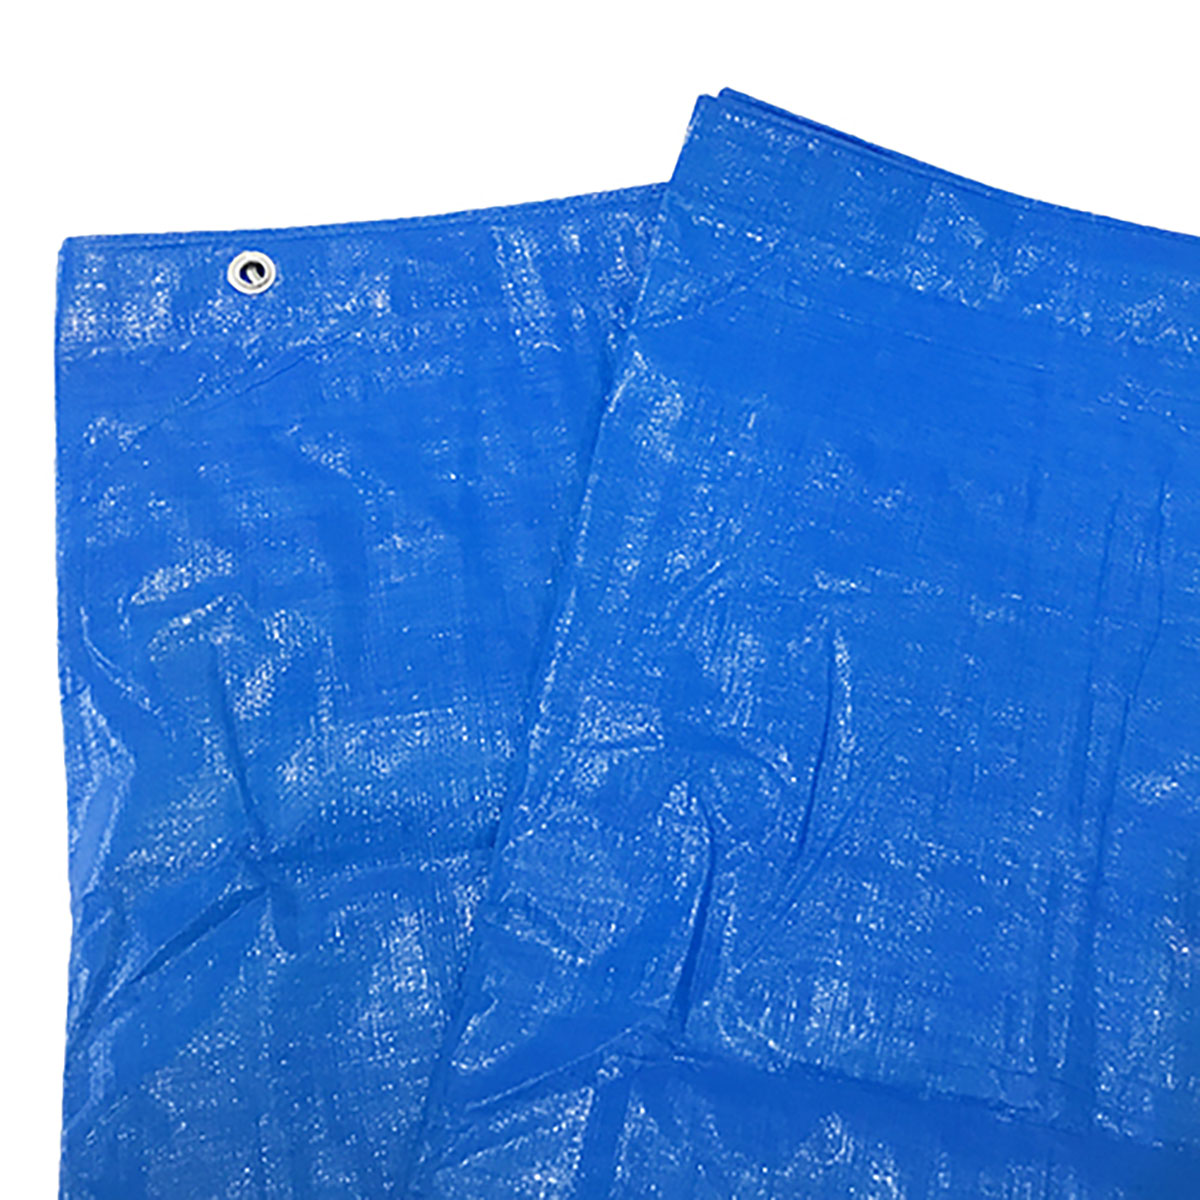 ブルーシート 巾約3.4×長さ約3.4m #3000